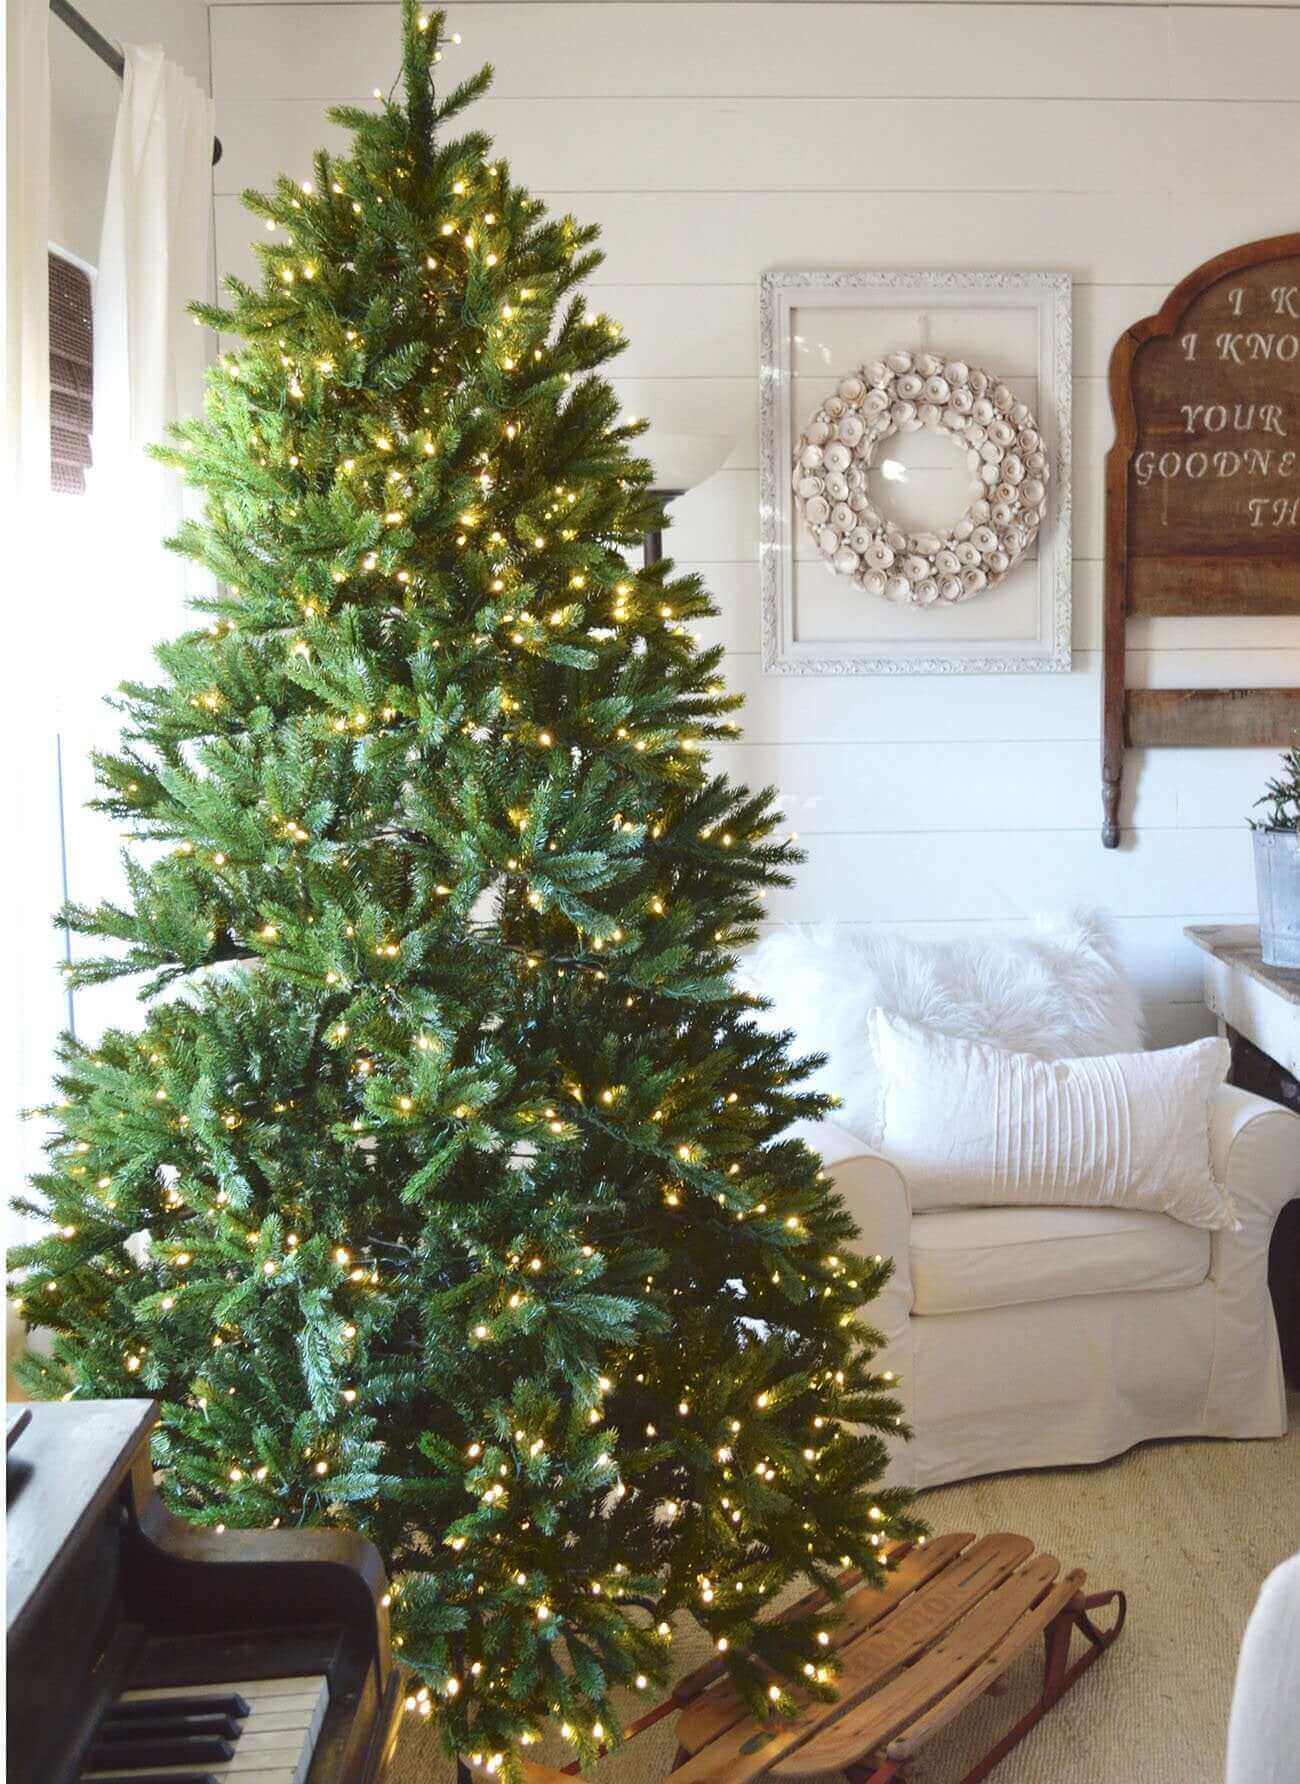 https://www.kingofchristmas.com/cdn/shop/products/7-5-Foot-King-Fraser-Fir-Quick-Shape-Christmas-Tree-Led-Lights_1_d67533d9-5449-404a-9c9e-ae7a18c4d84b.jpg?v=1694619495&width=1300